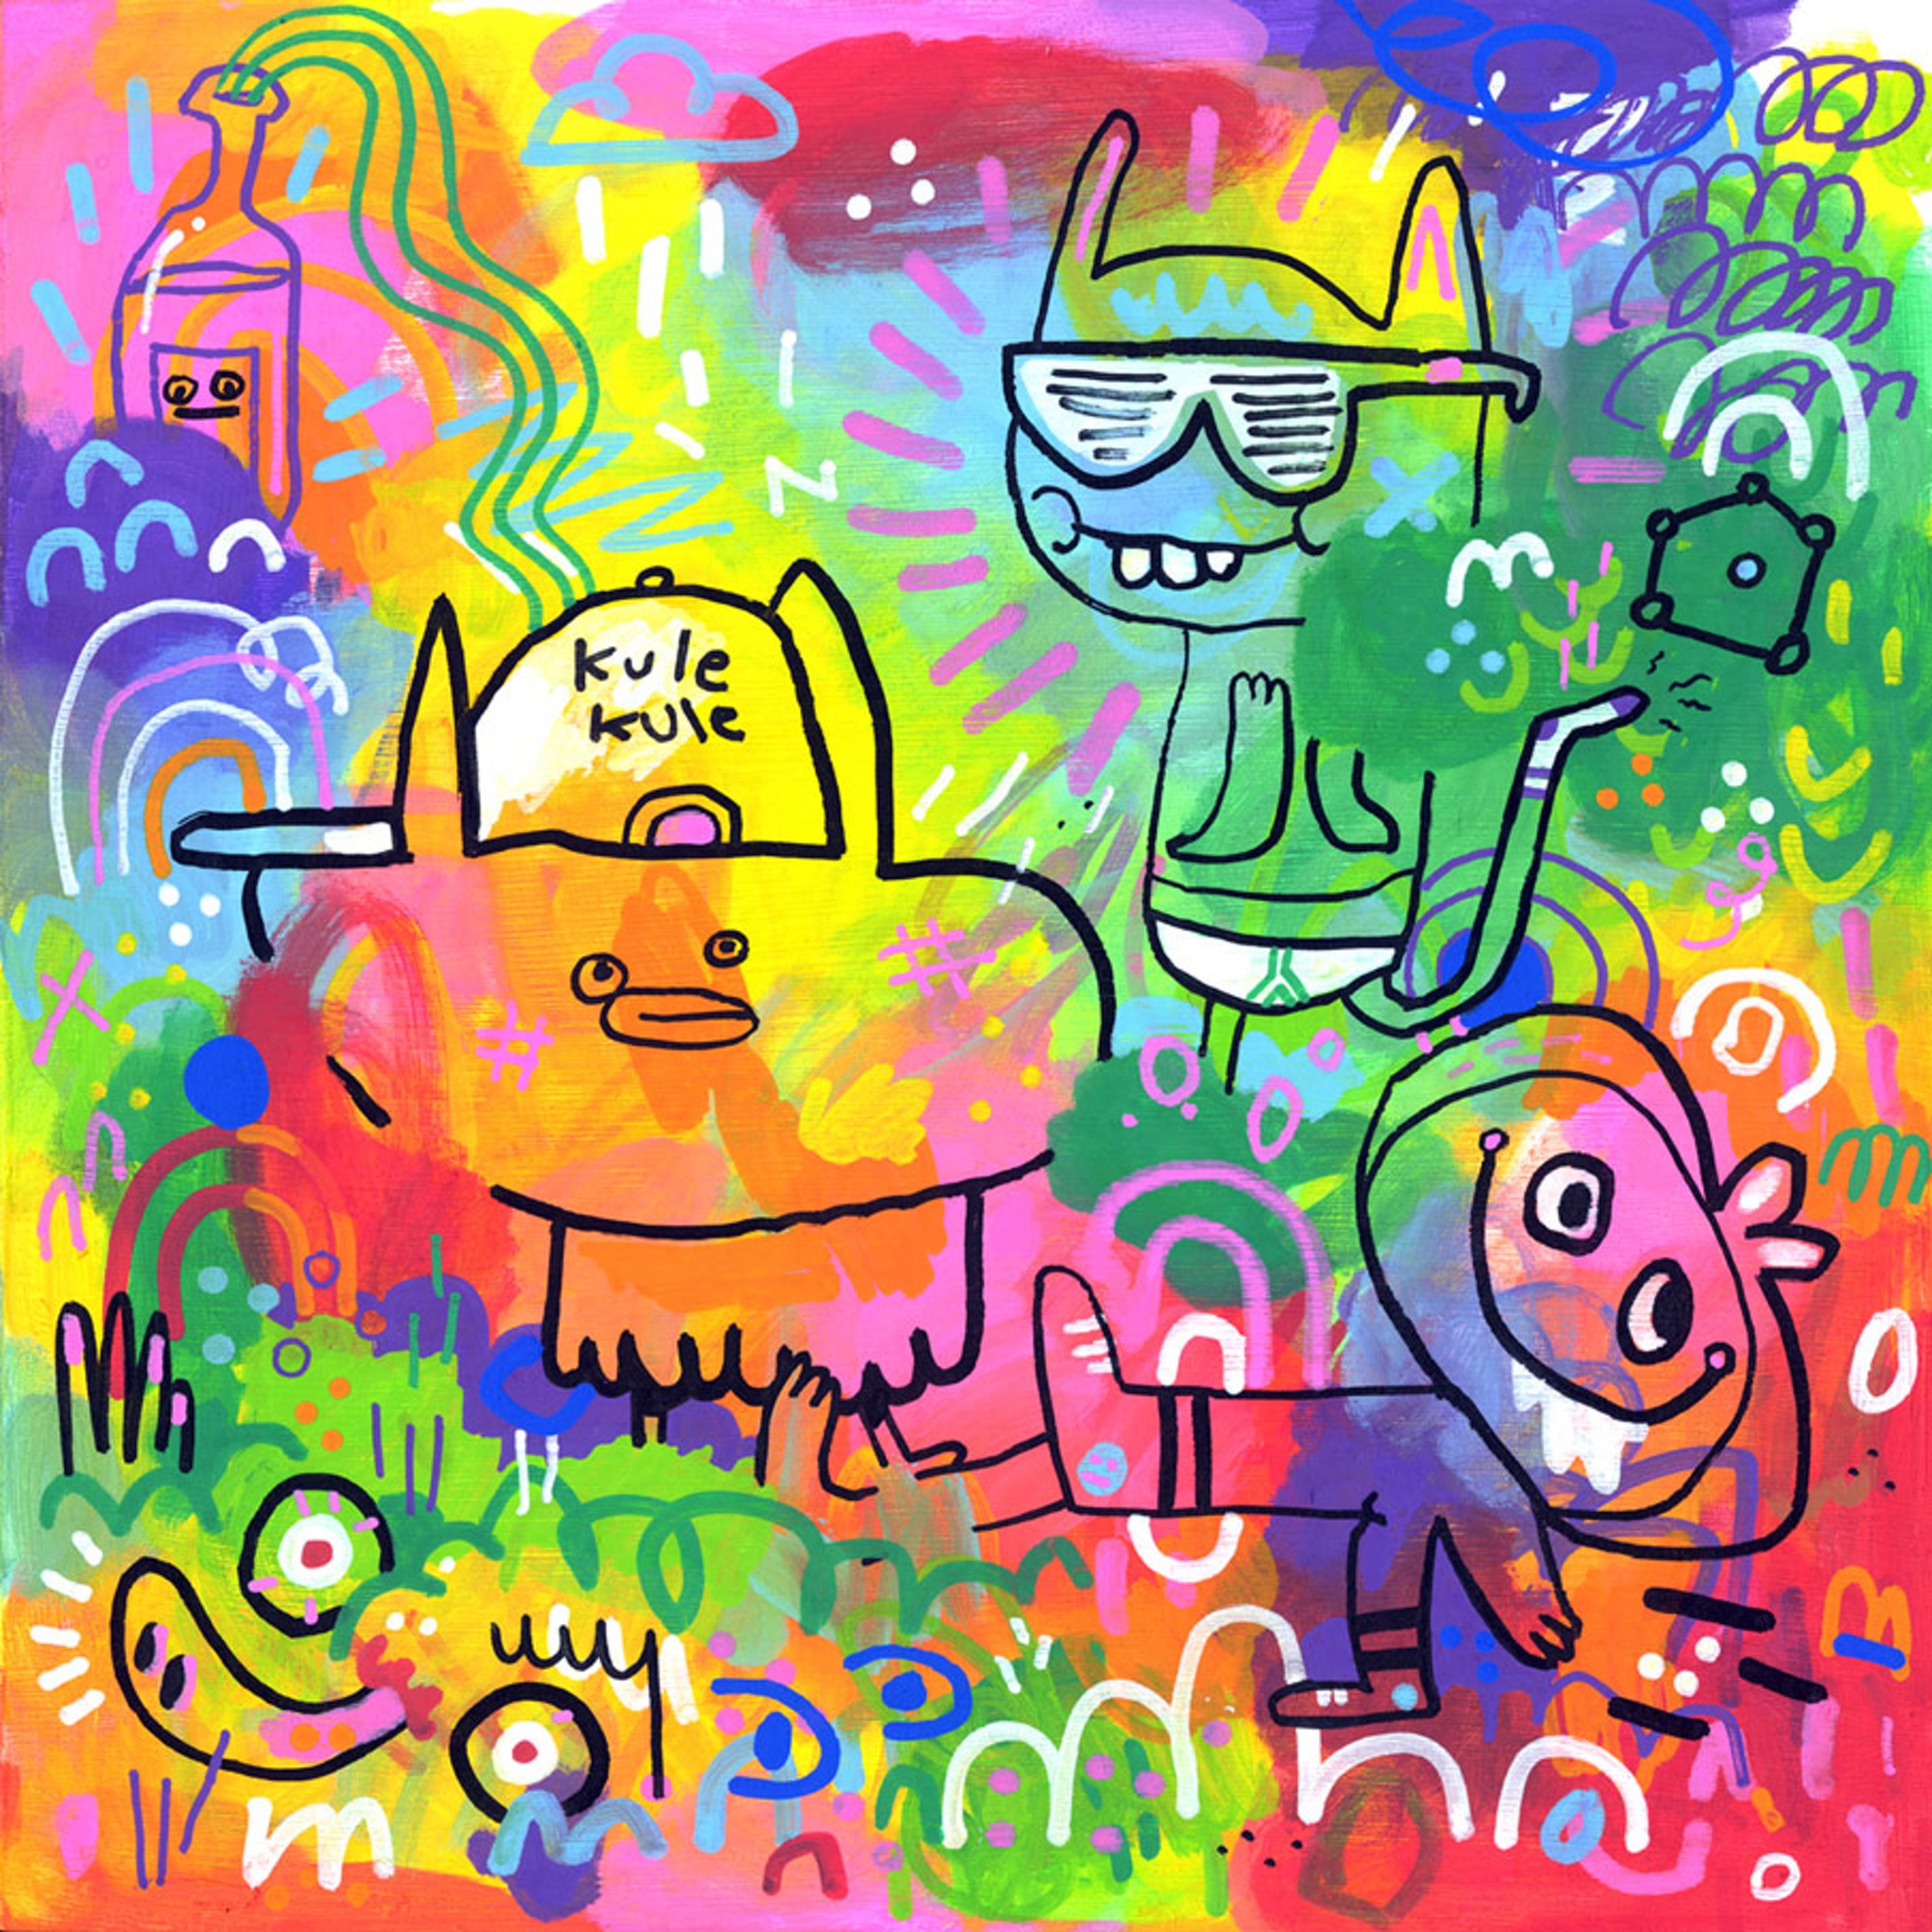 image of Kule-kule doodle